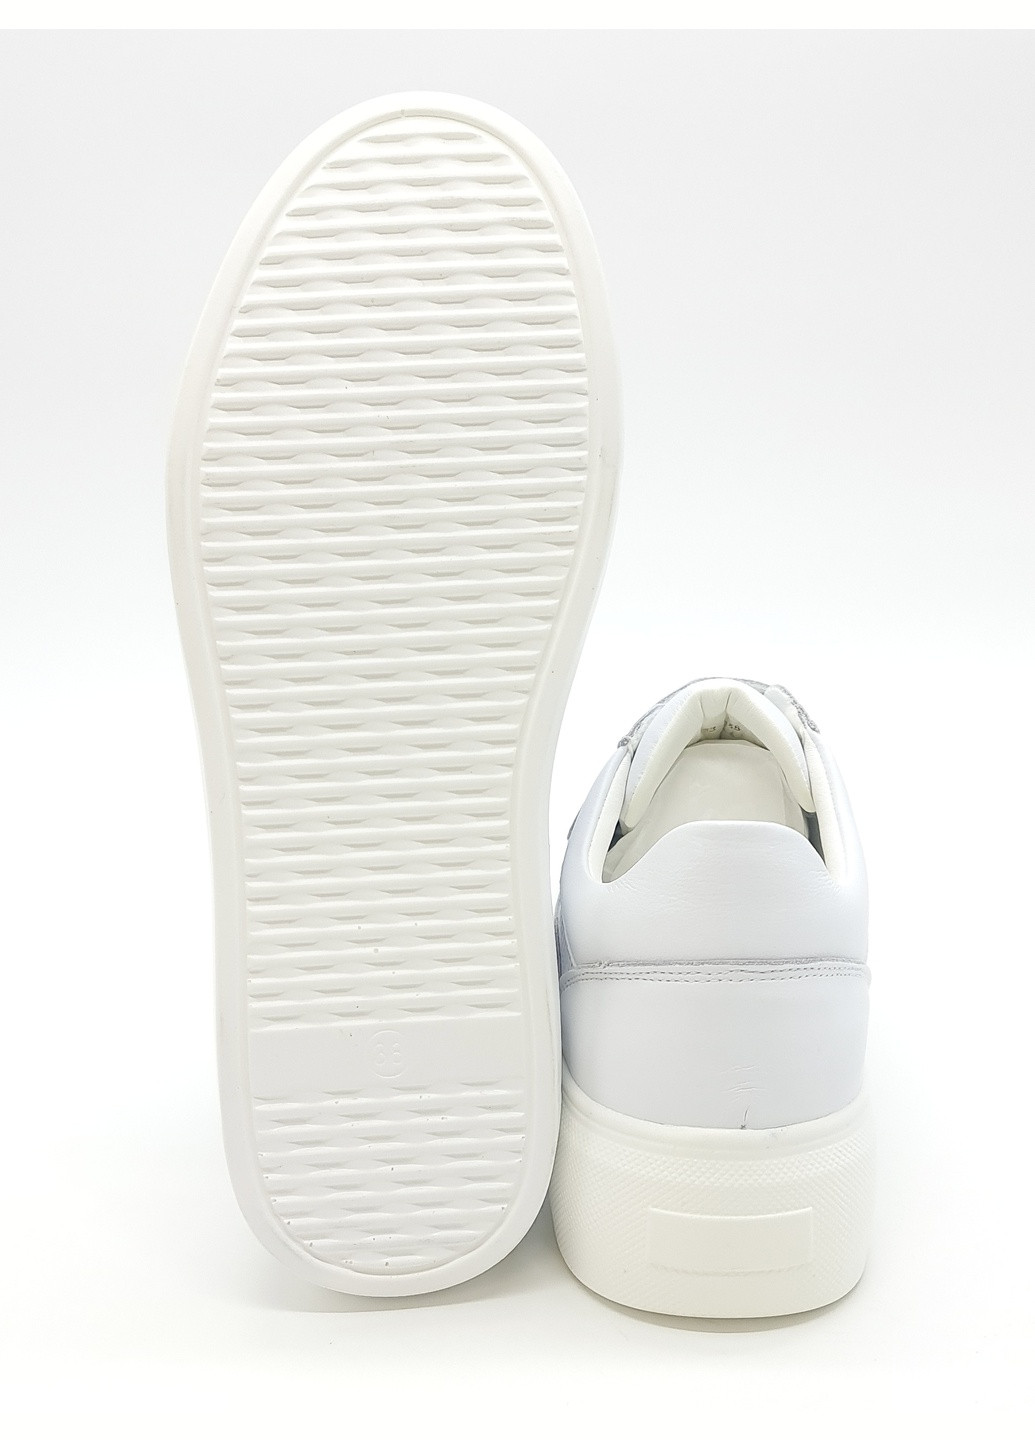 Белые женские кеды белые кожаные he-18-1 23,5 см (р) Hengji